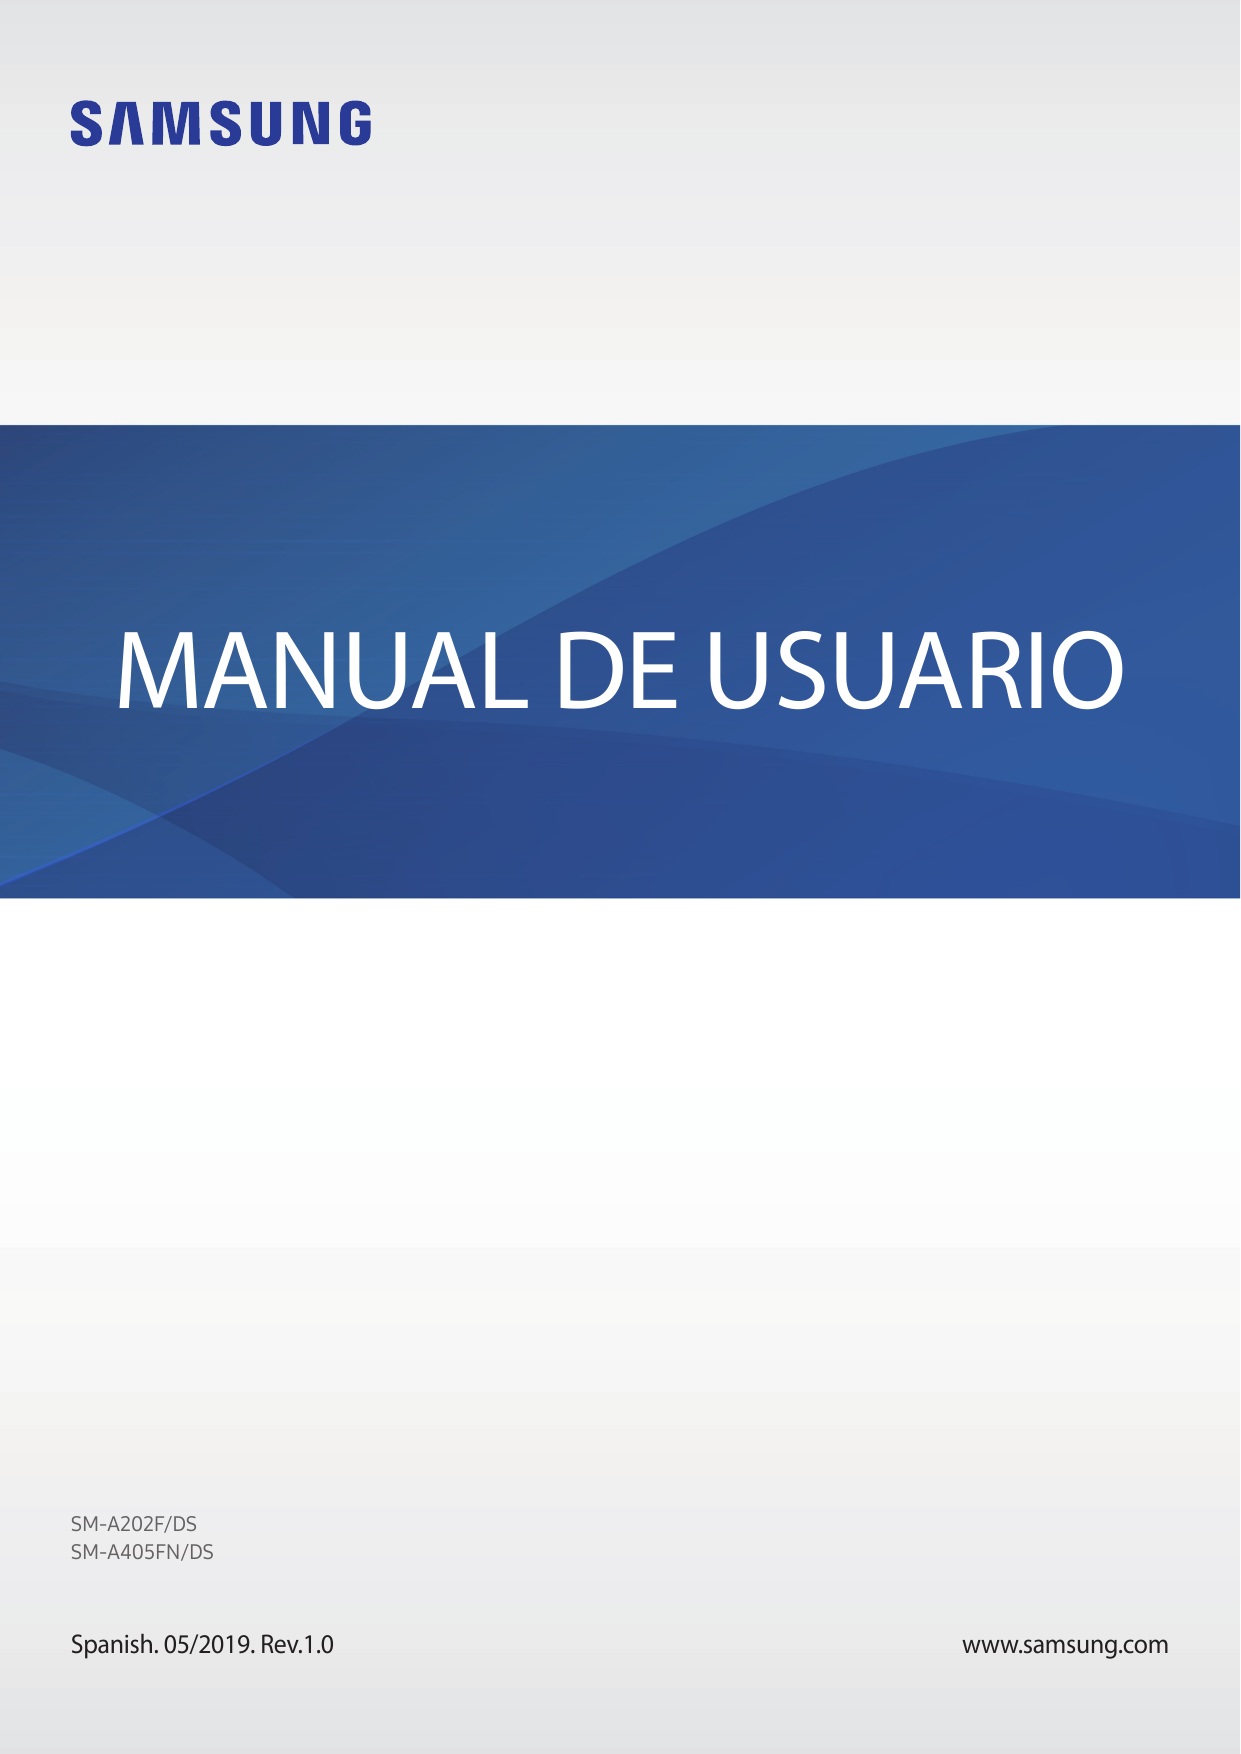 MANUAL DE USUARIOSM-A202F/DSSM-A405FN/DSSpanish. 05/2019. Rev.1.0www.samsung.com